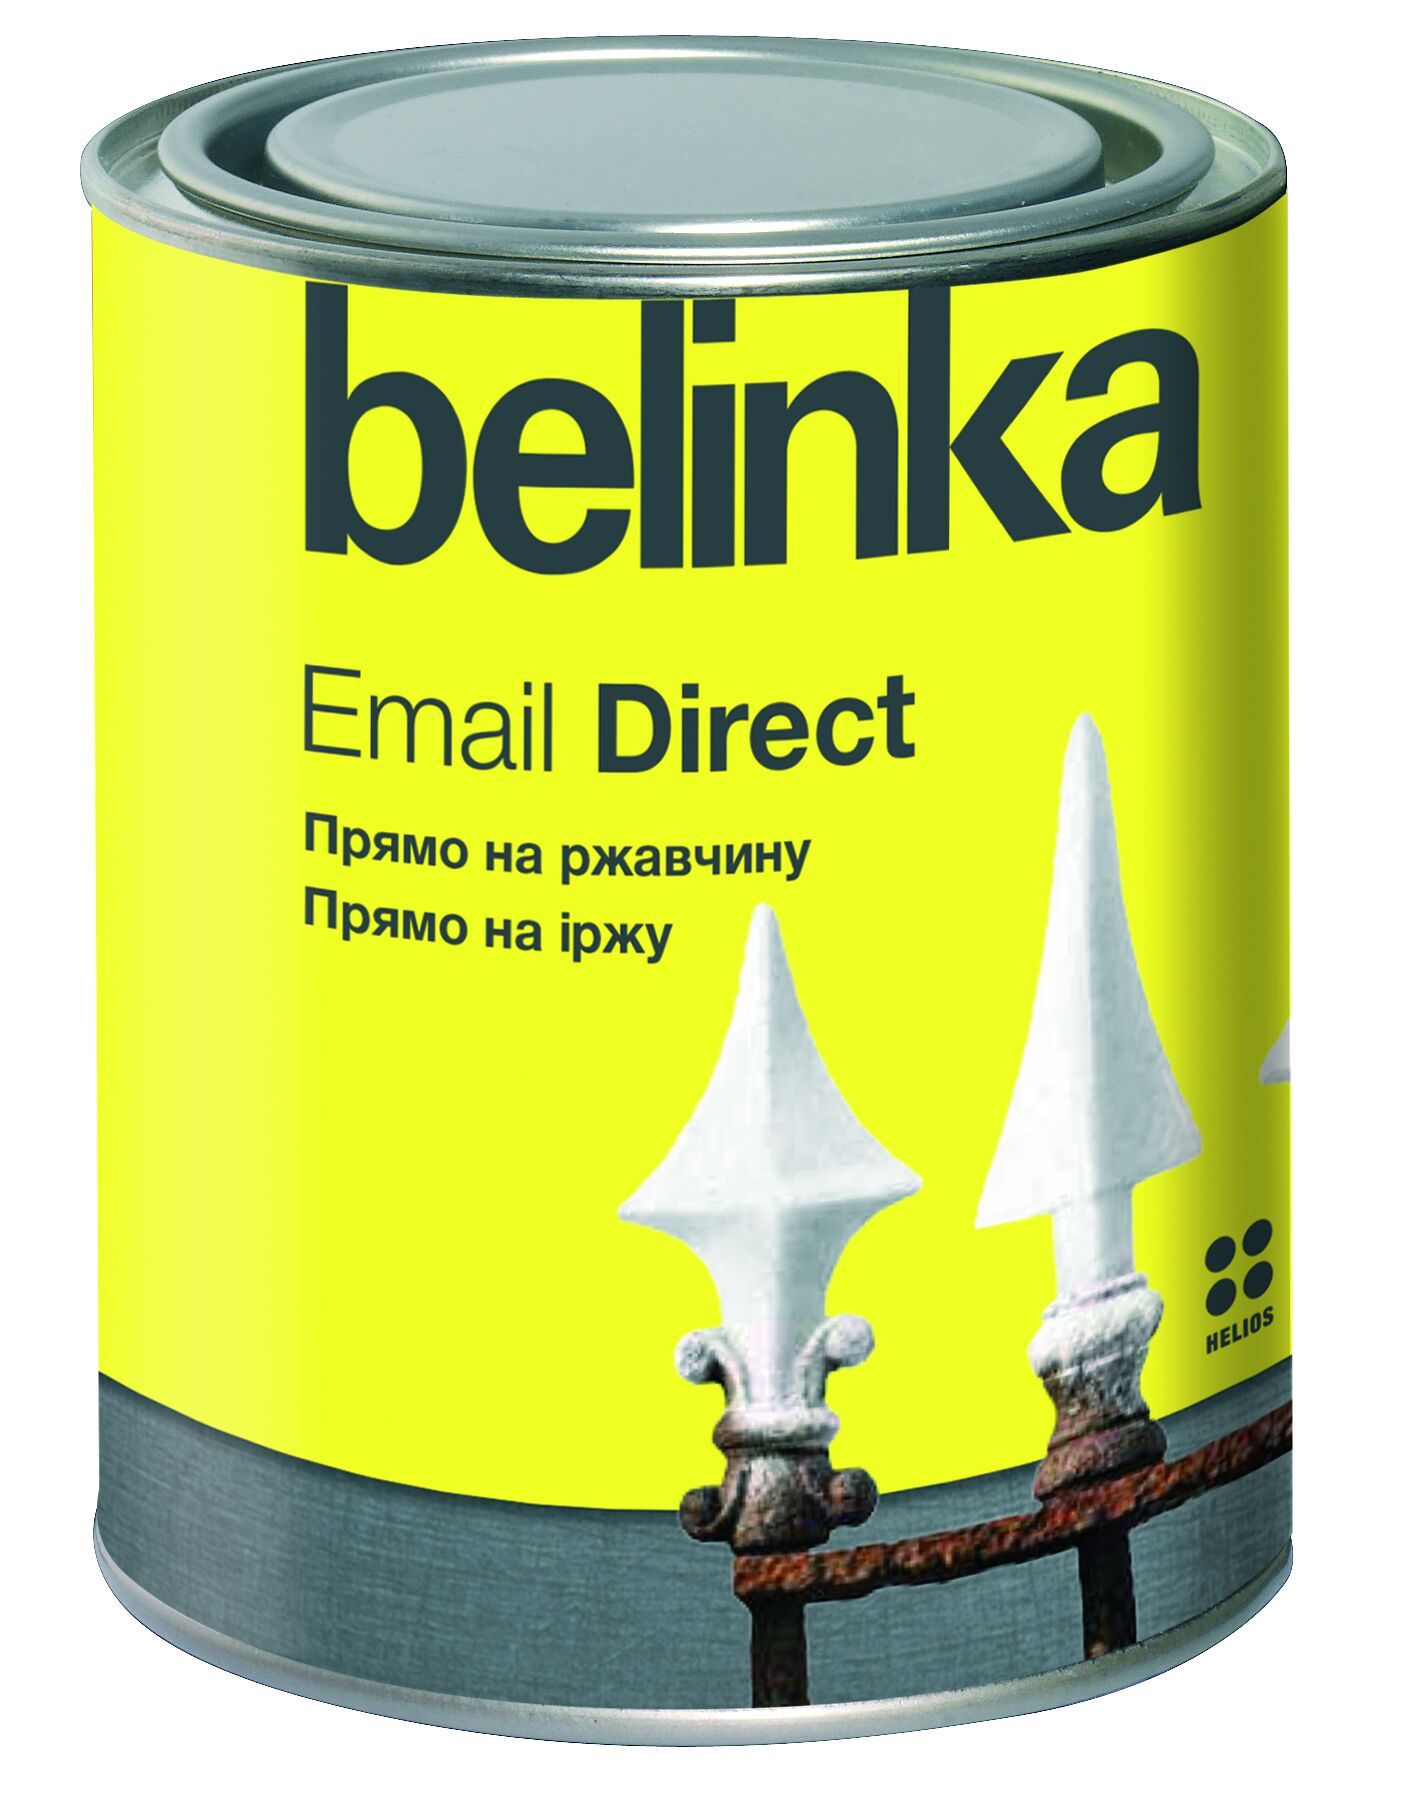 Эмаль по ржавчине Email Direct Belinka Черная 2,5 л